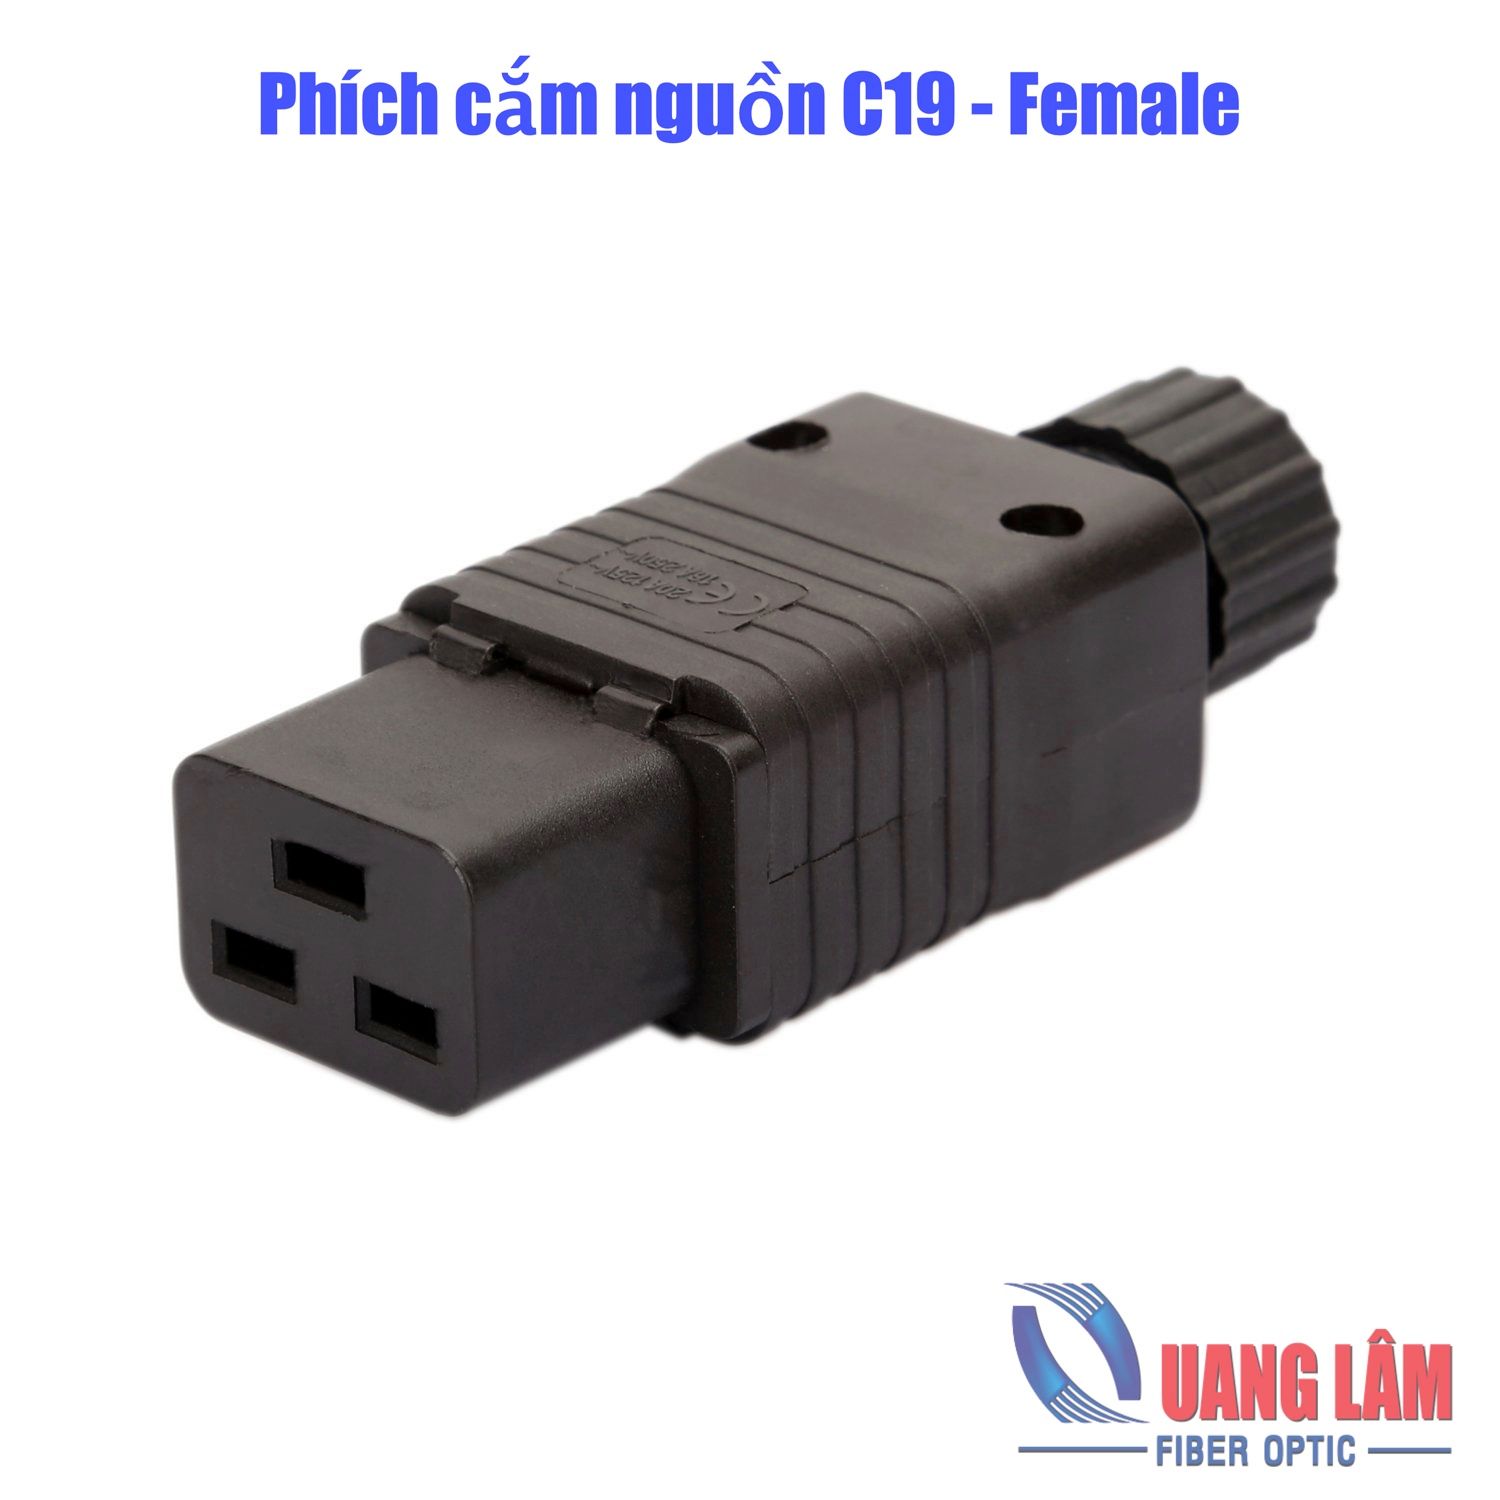 Phích cắm nguồn IEC320 C19 Female 16A 250V